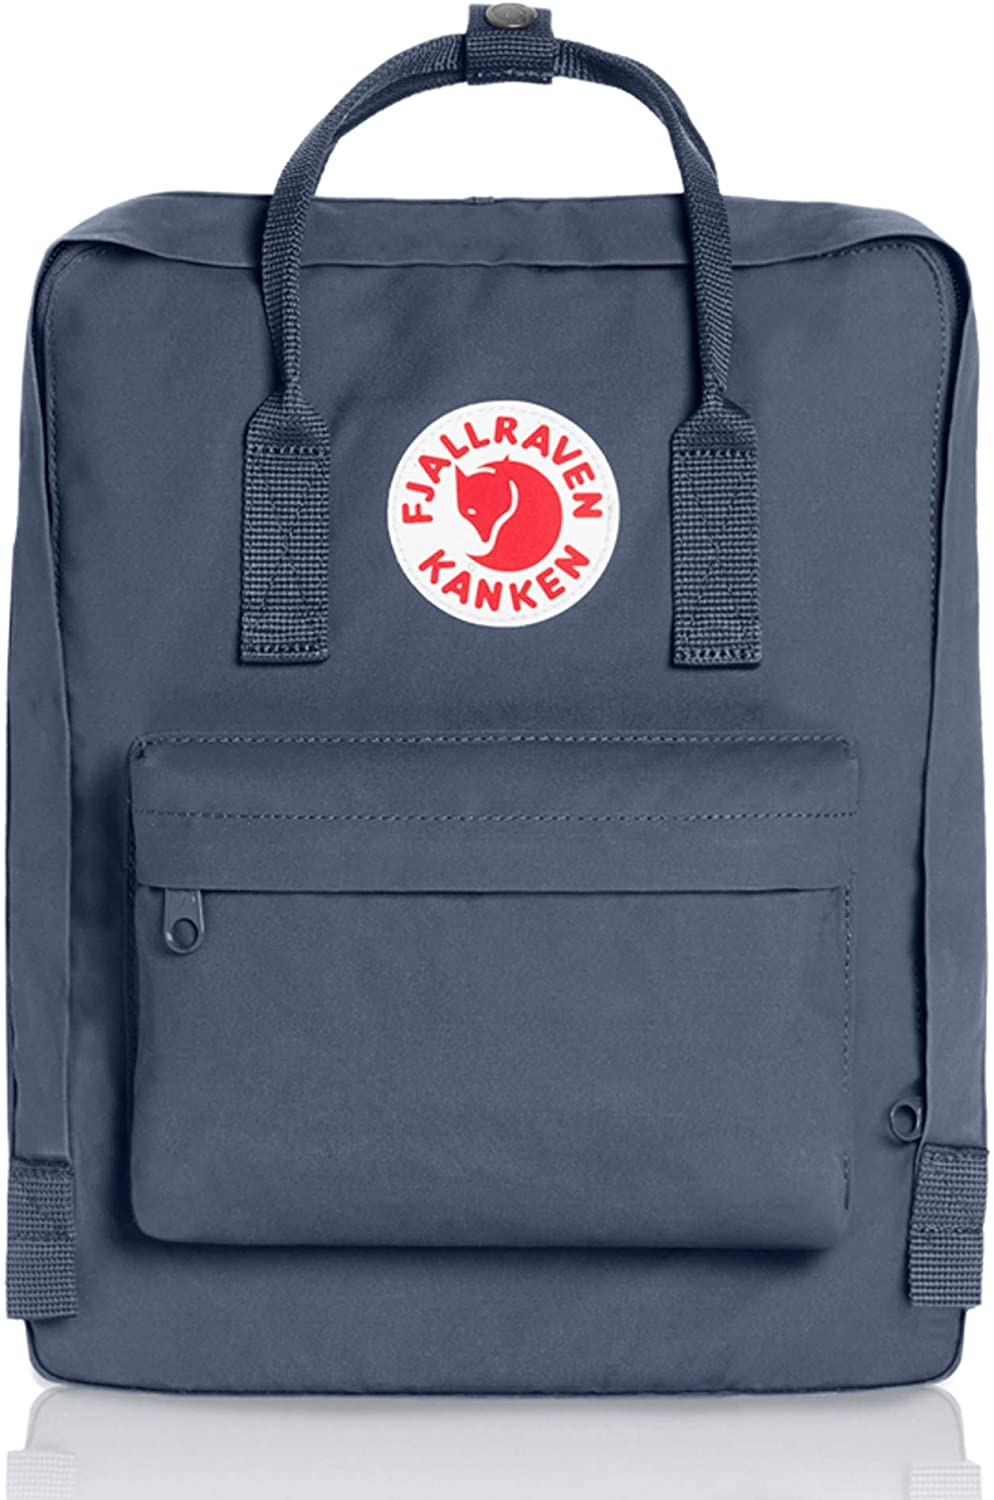 Fjallraven, Kanken Classic Backpack for Everyday, Graphite